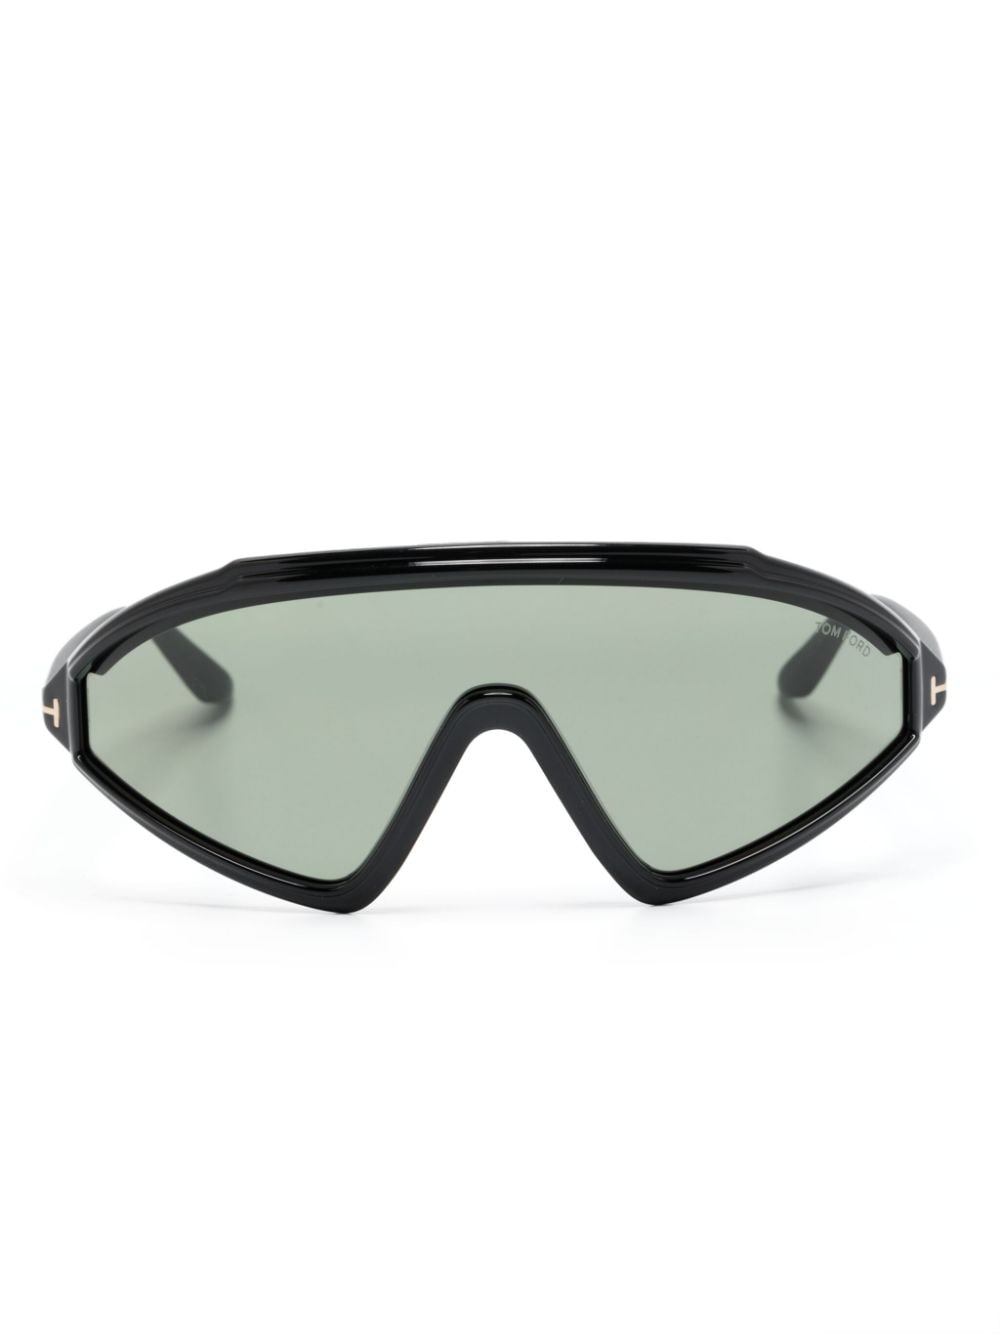 Tom Ford Lorna Shield-frame Sunglasses In Schwarz